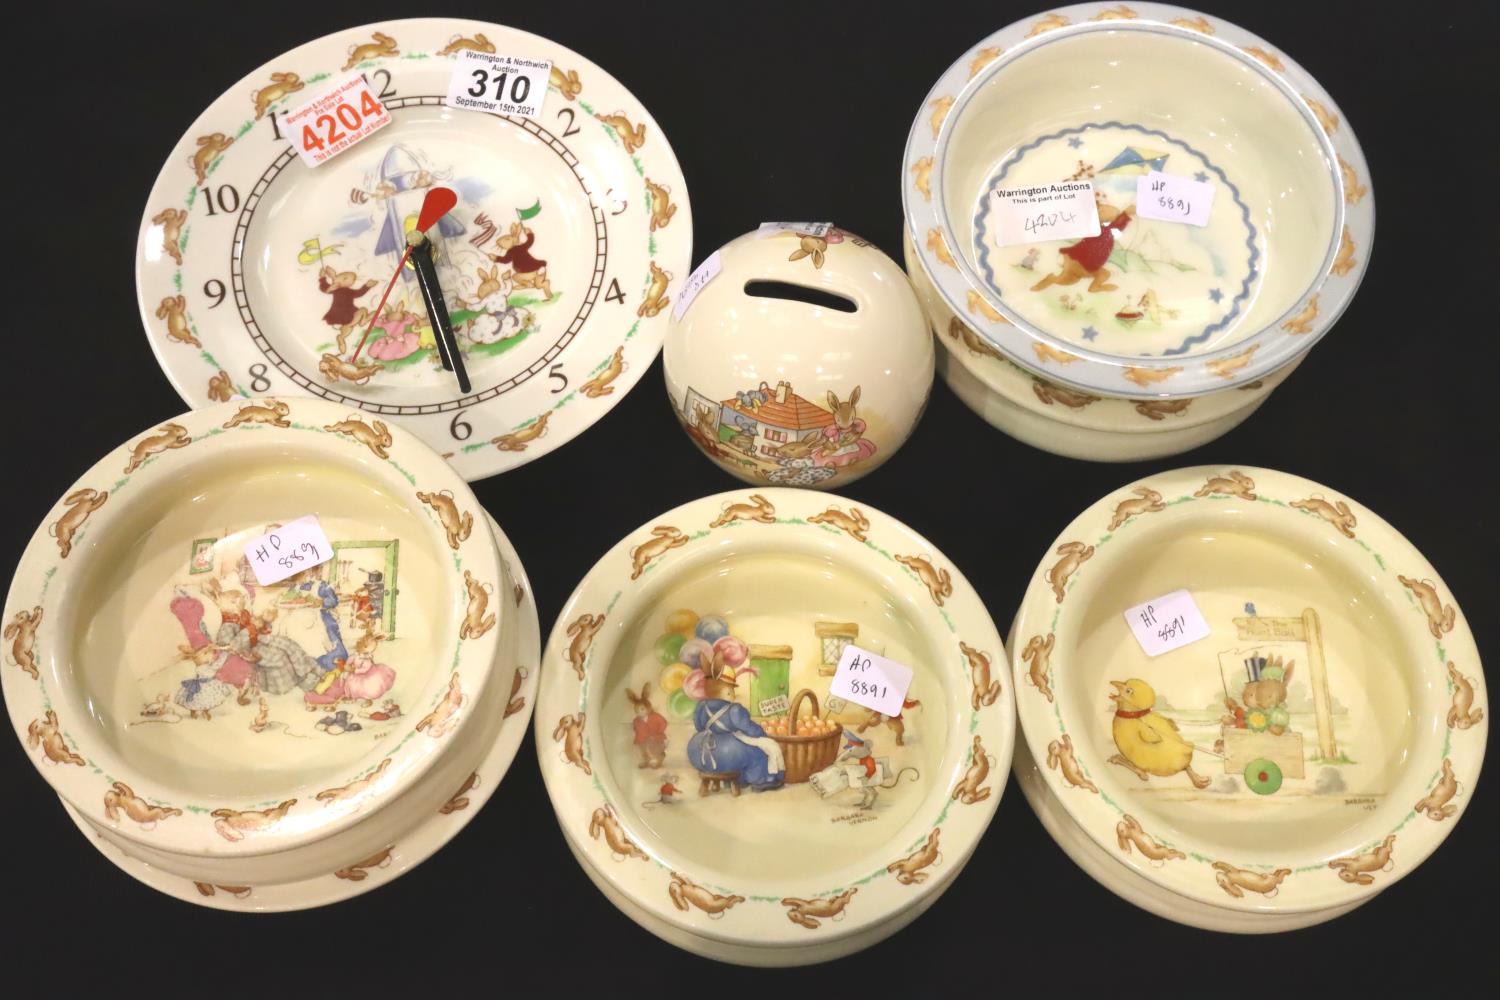 Royal Doulton Bunnykins; clock, six cereal bowls and a money box. No cracks, chips or visible